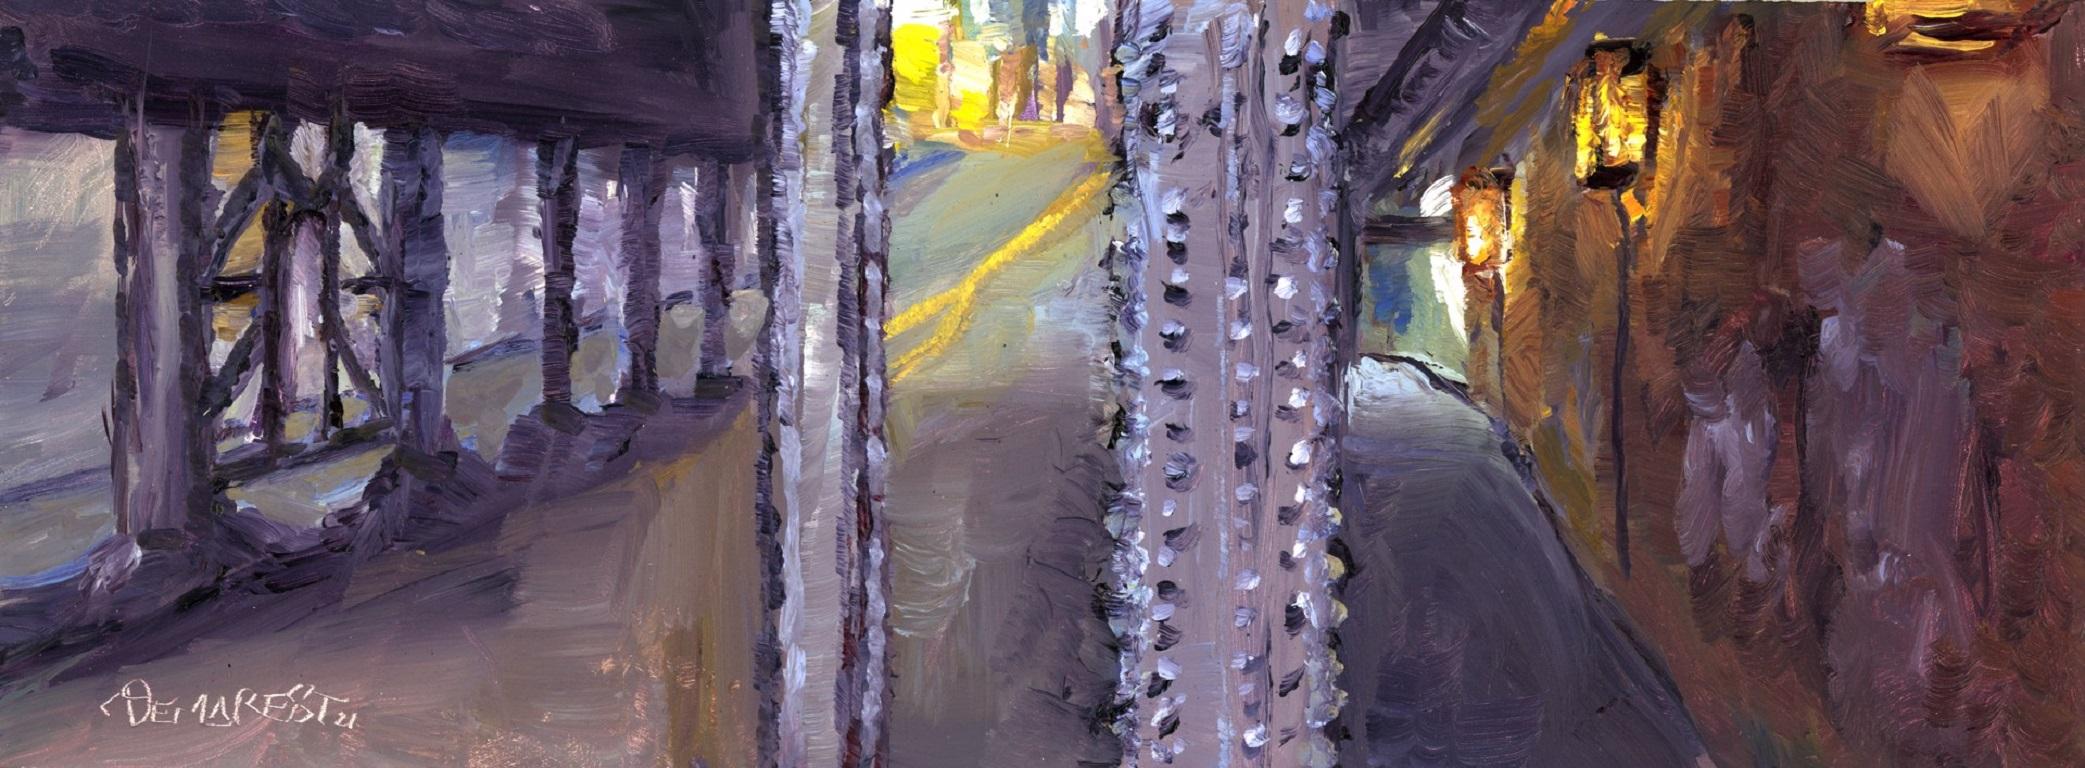 Delton Demarest Landscape Painting - 38th Bridge Under the Tracks